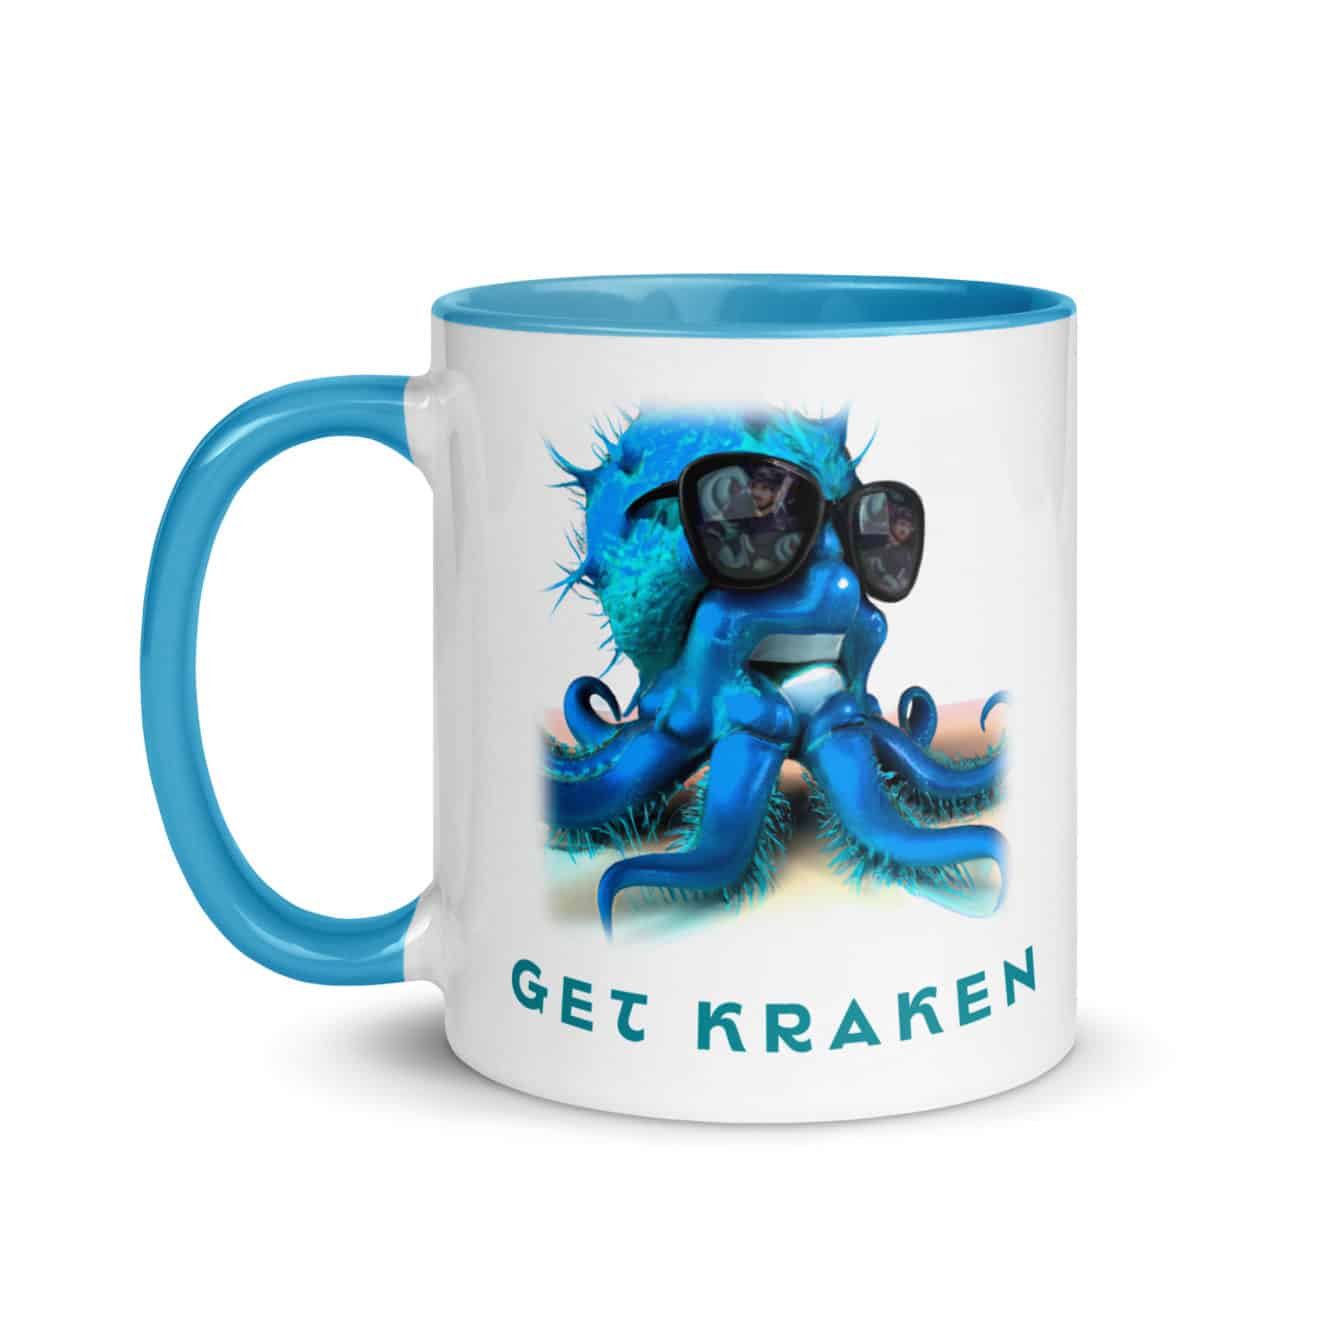 Get Kraken Mug with Color Inside